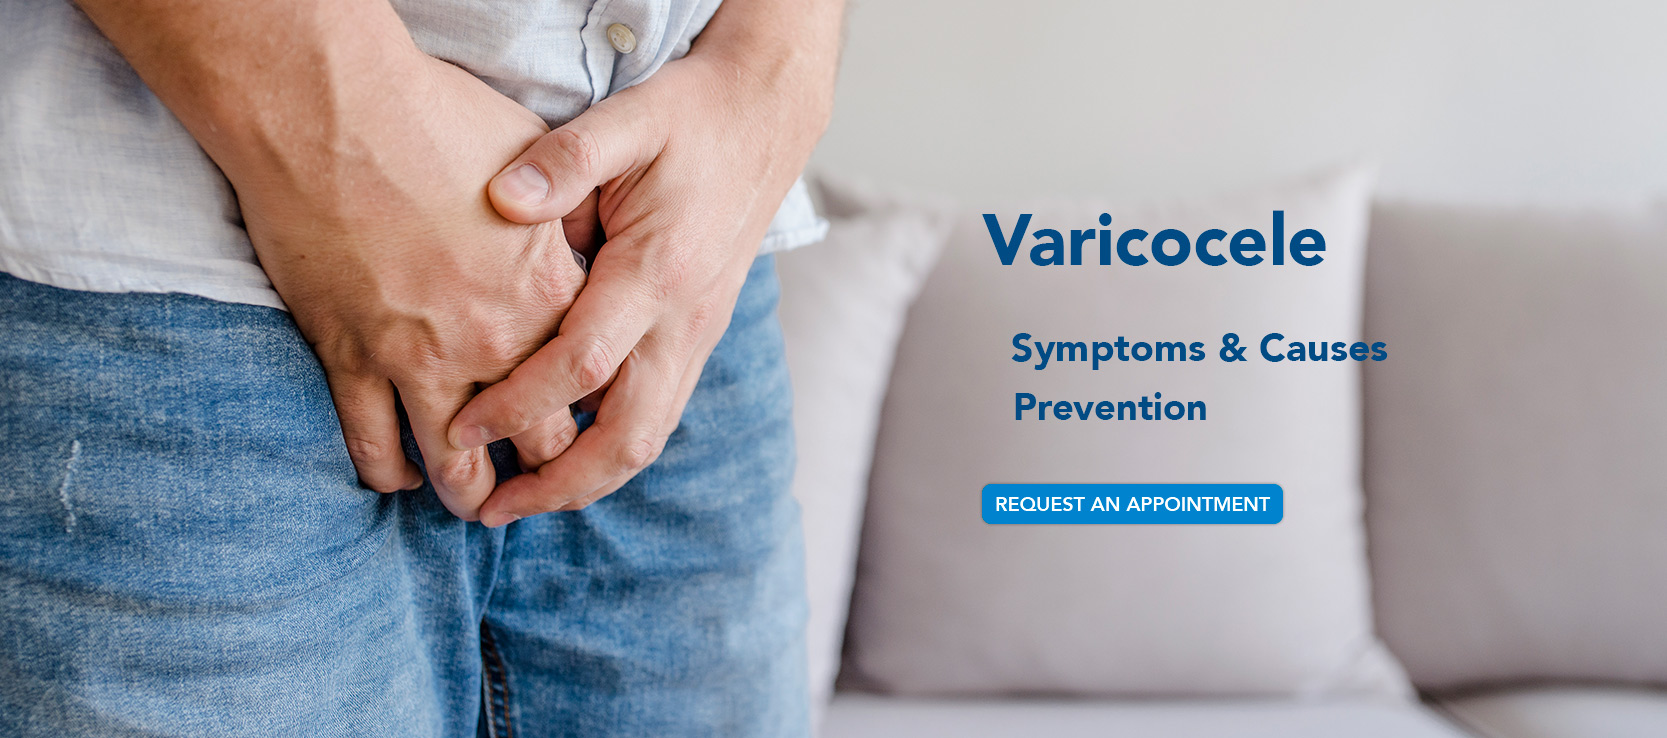 Varicocele: Risk Factors, Diagnosis and Treatment